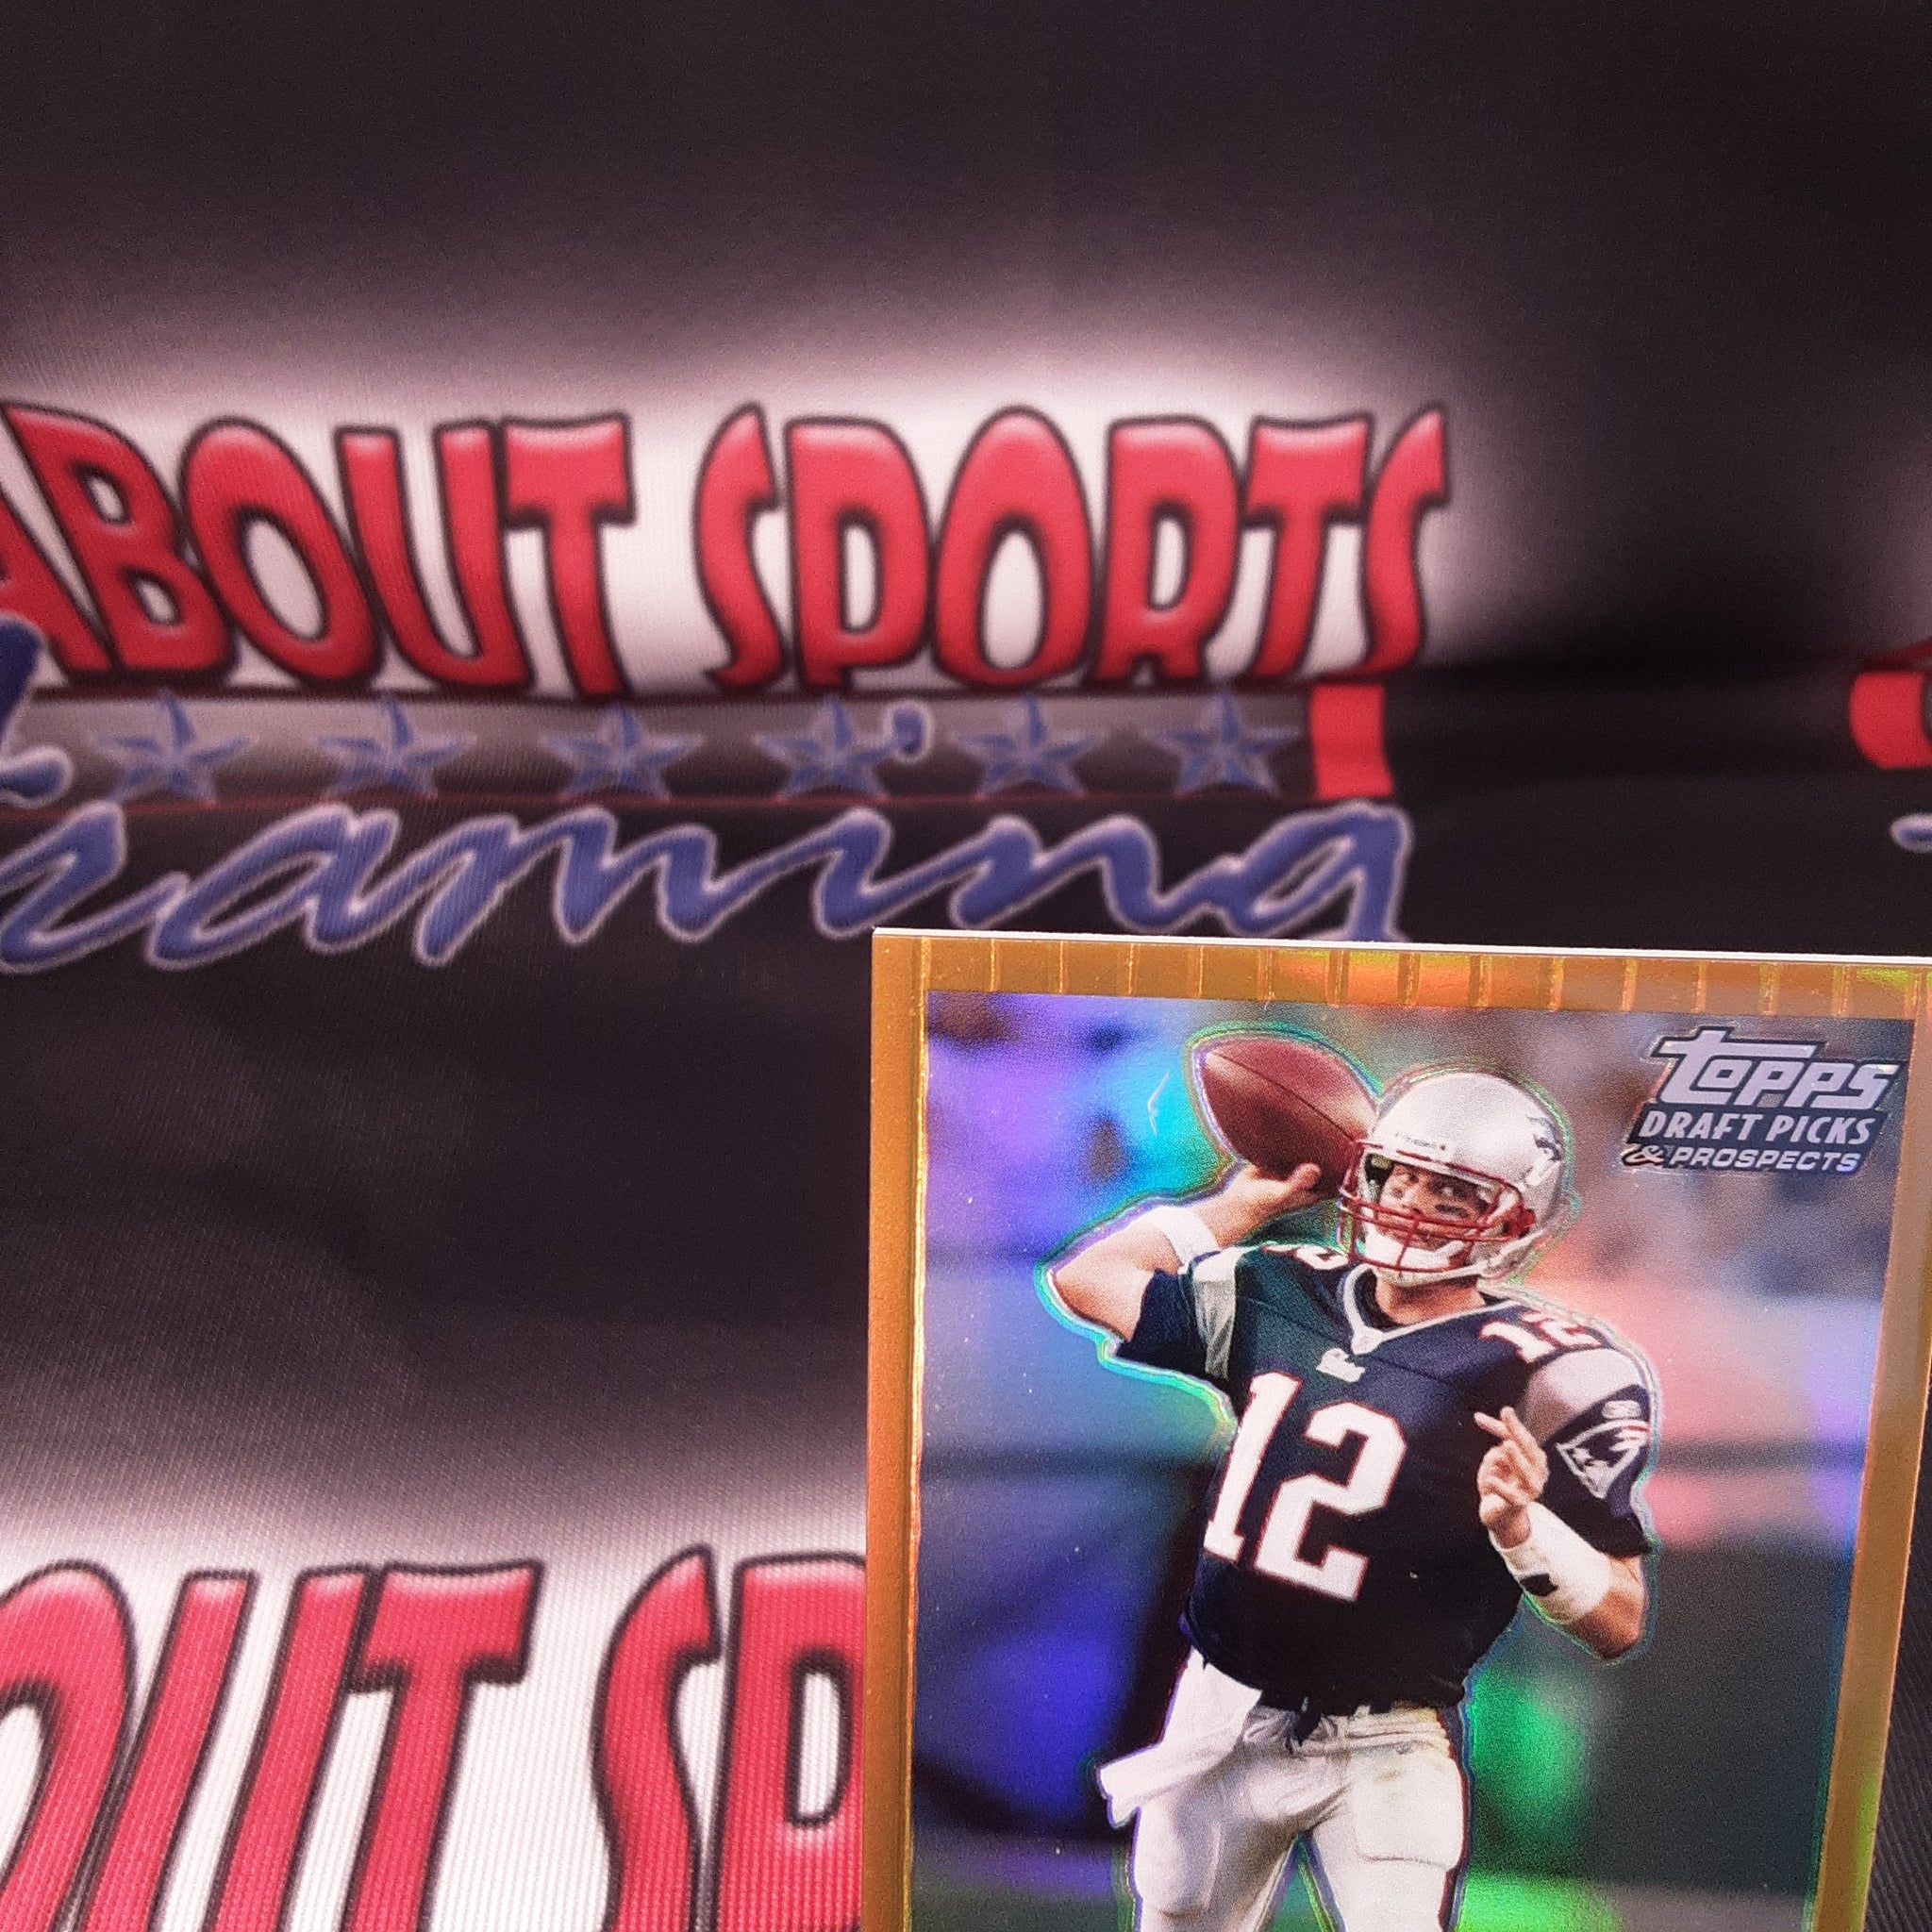 2004 Topps Draft Picks & Prospect Gold Refractor Card #53 Tom Brady